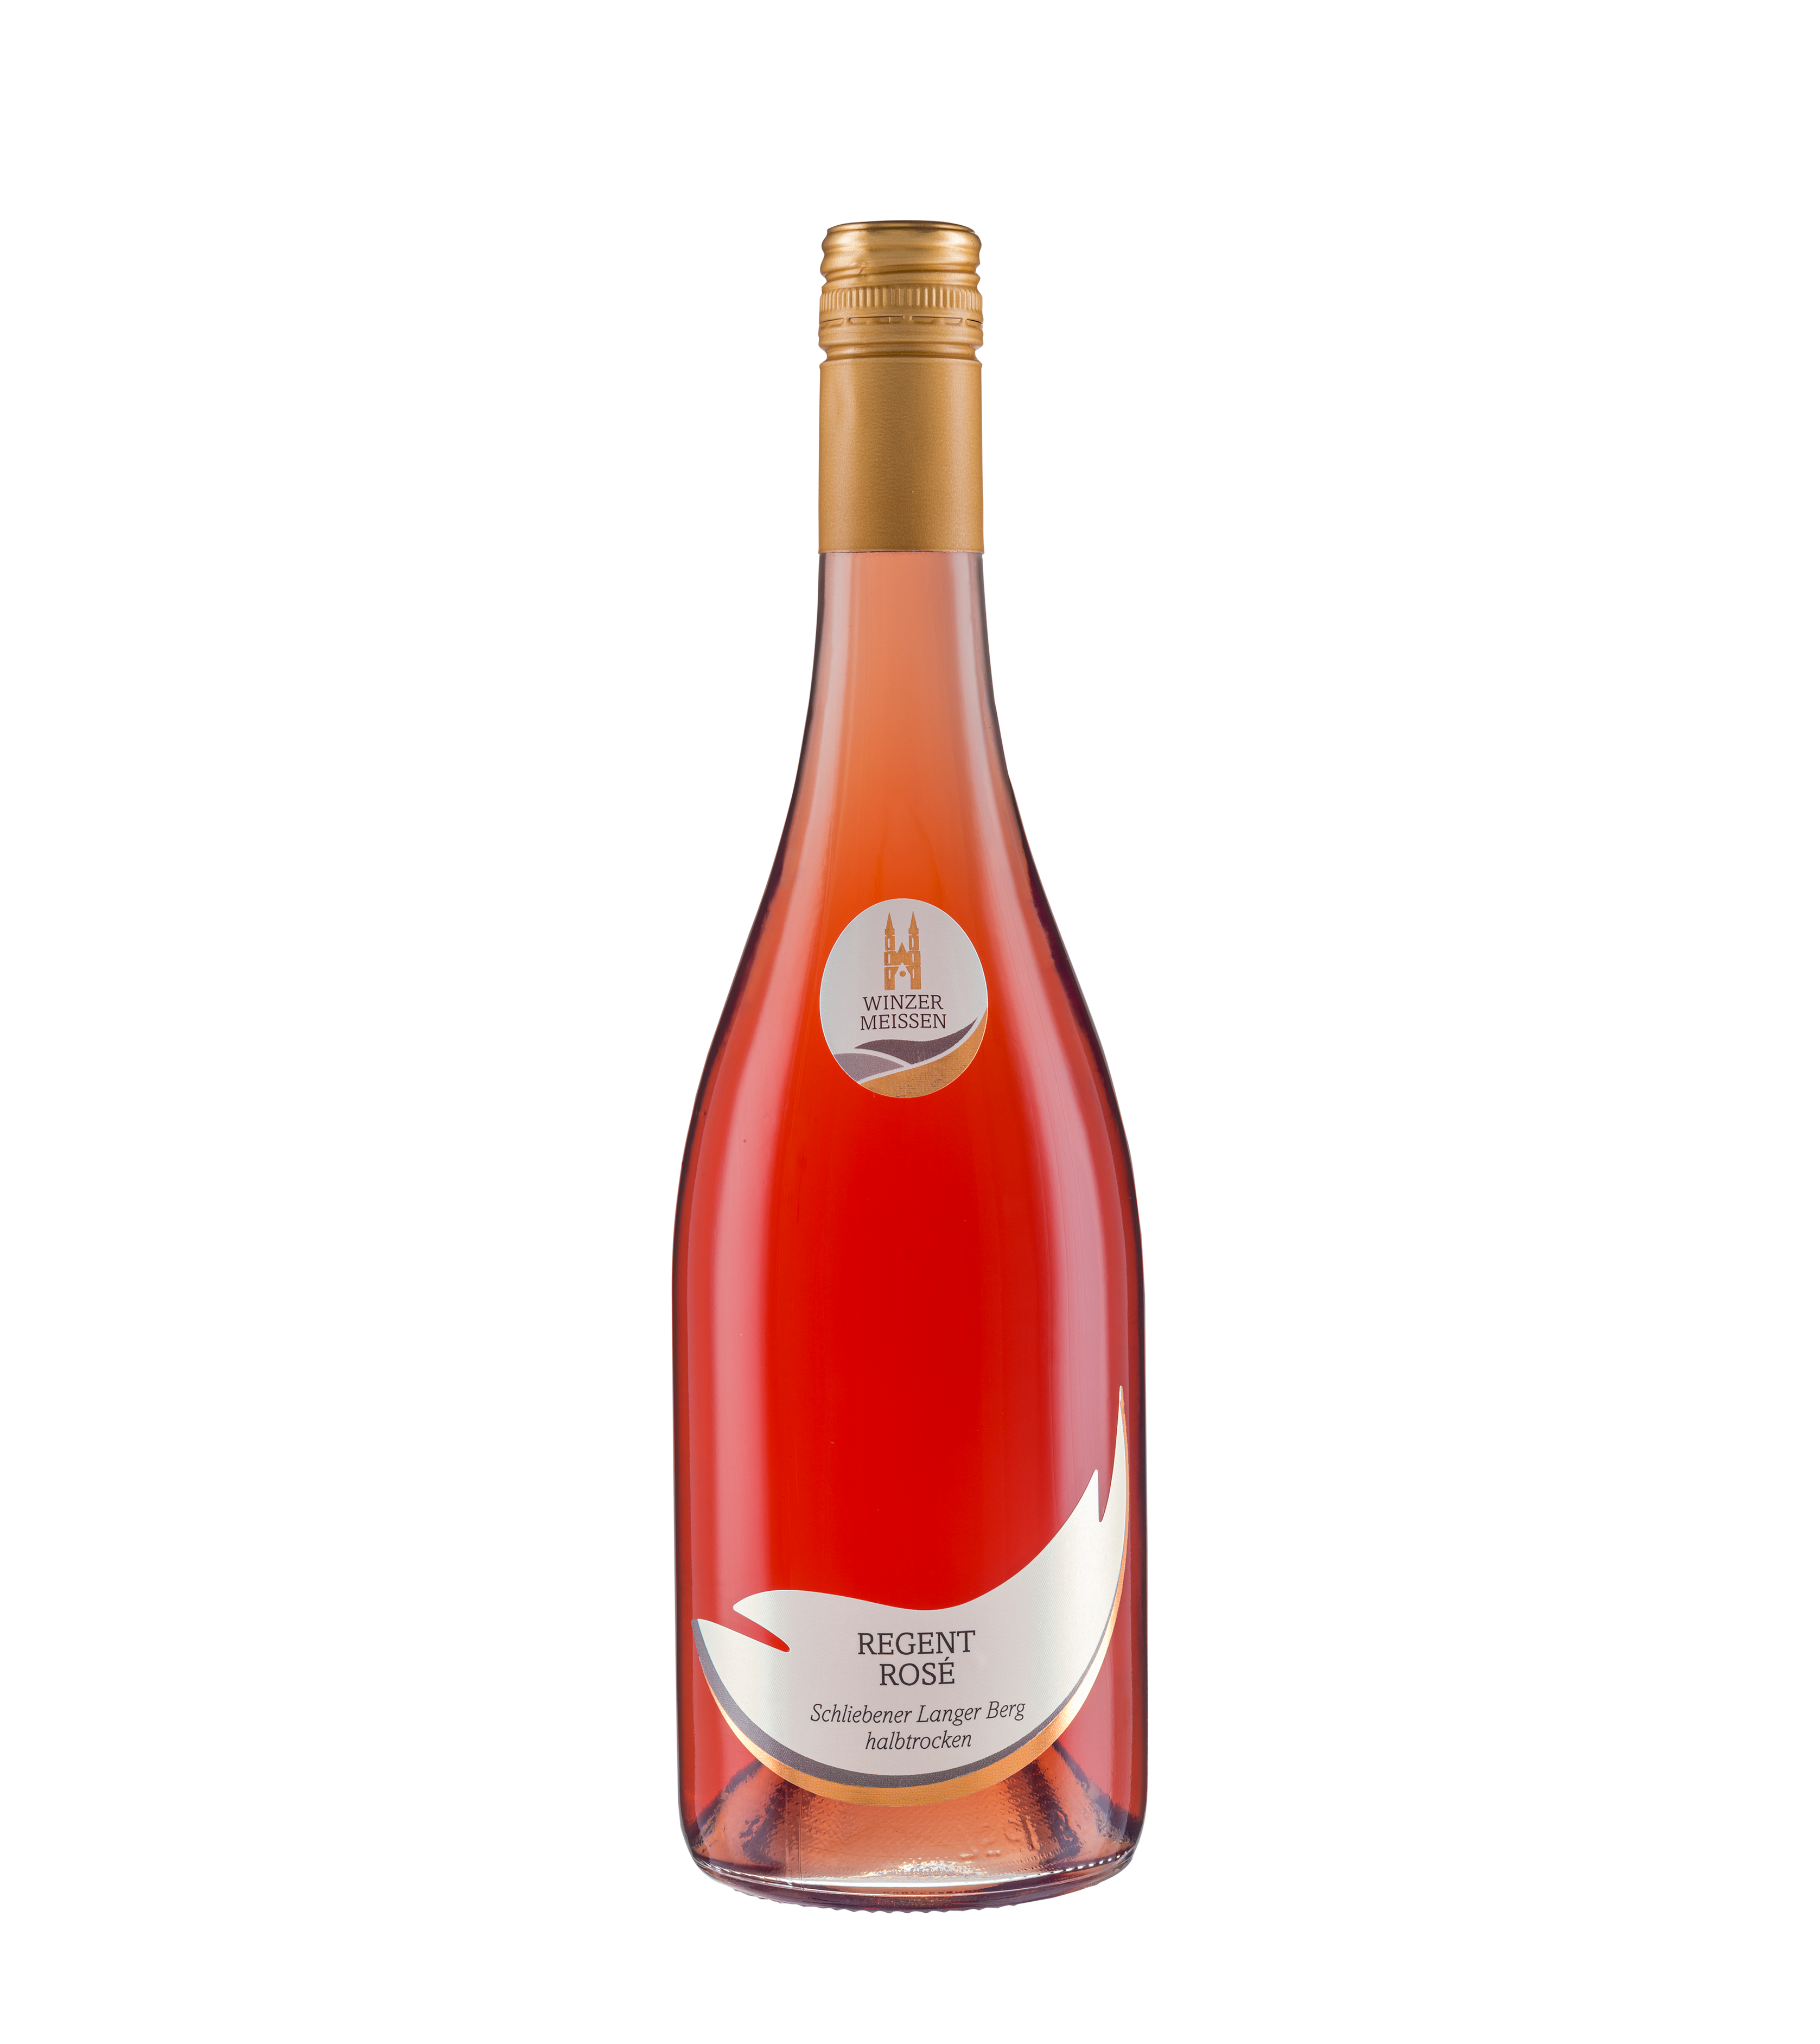 2021 Regent Rosé       Schliebener Langer Berg      Qualitätswein halbtrocken